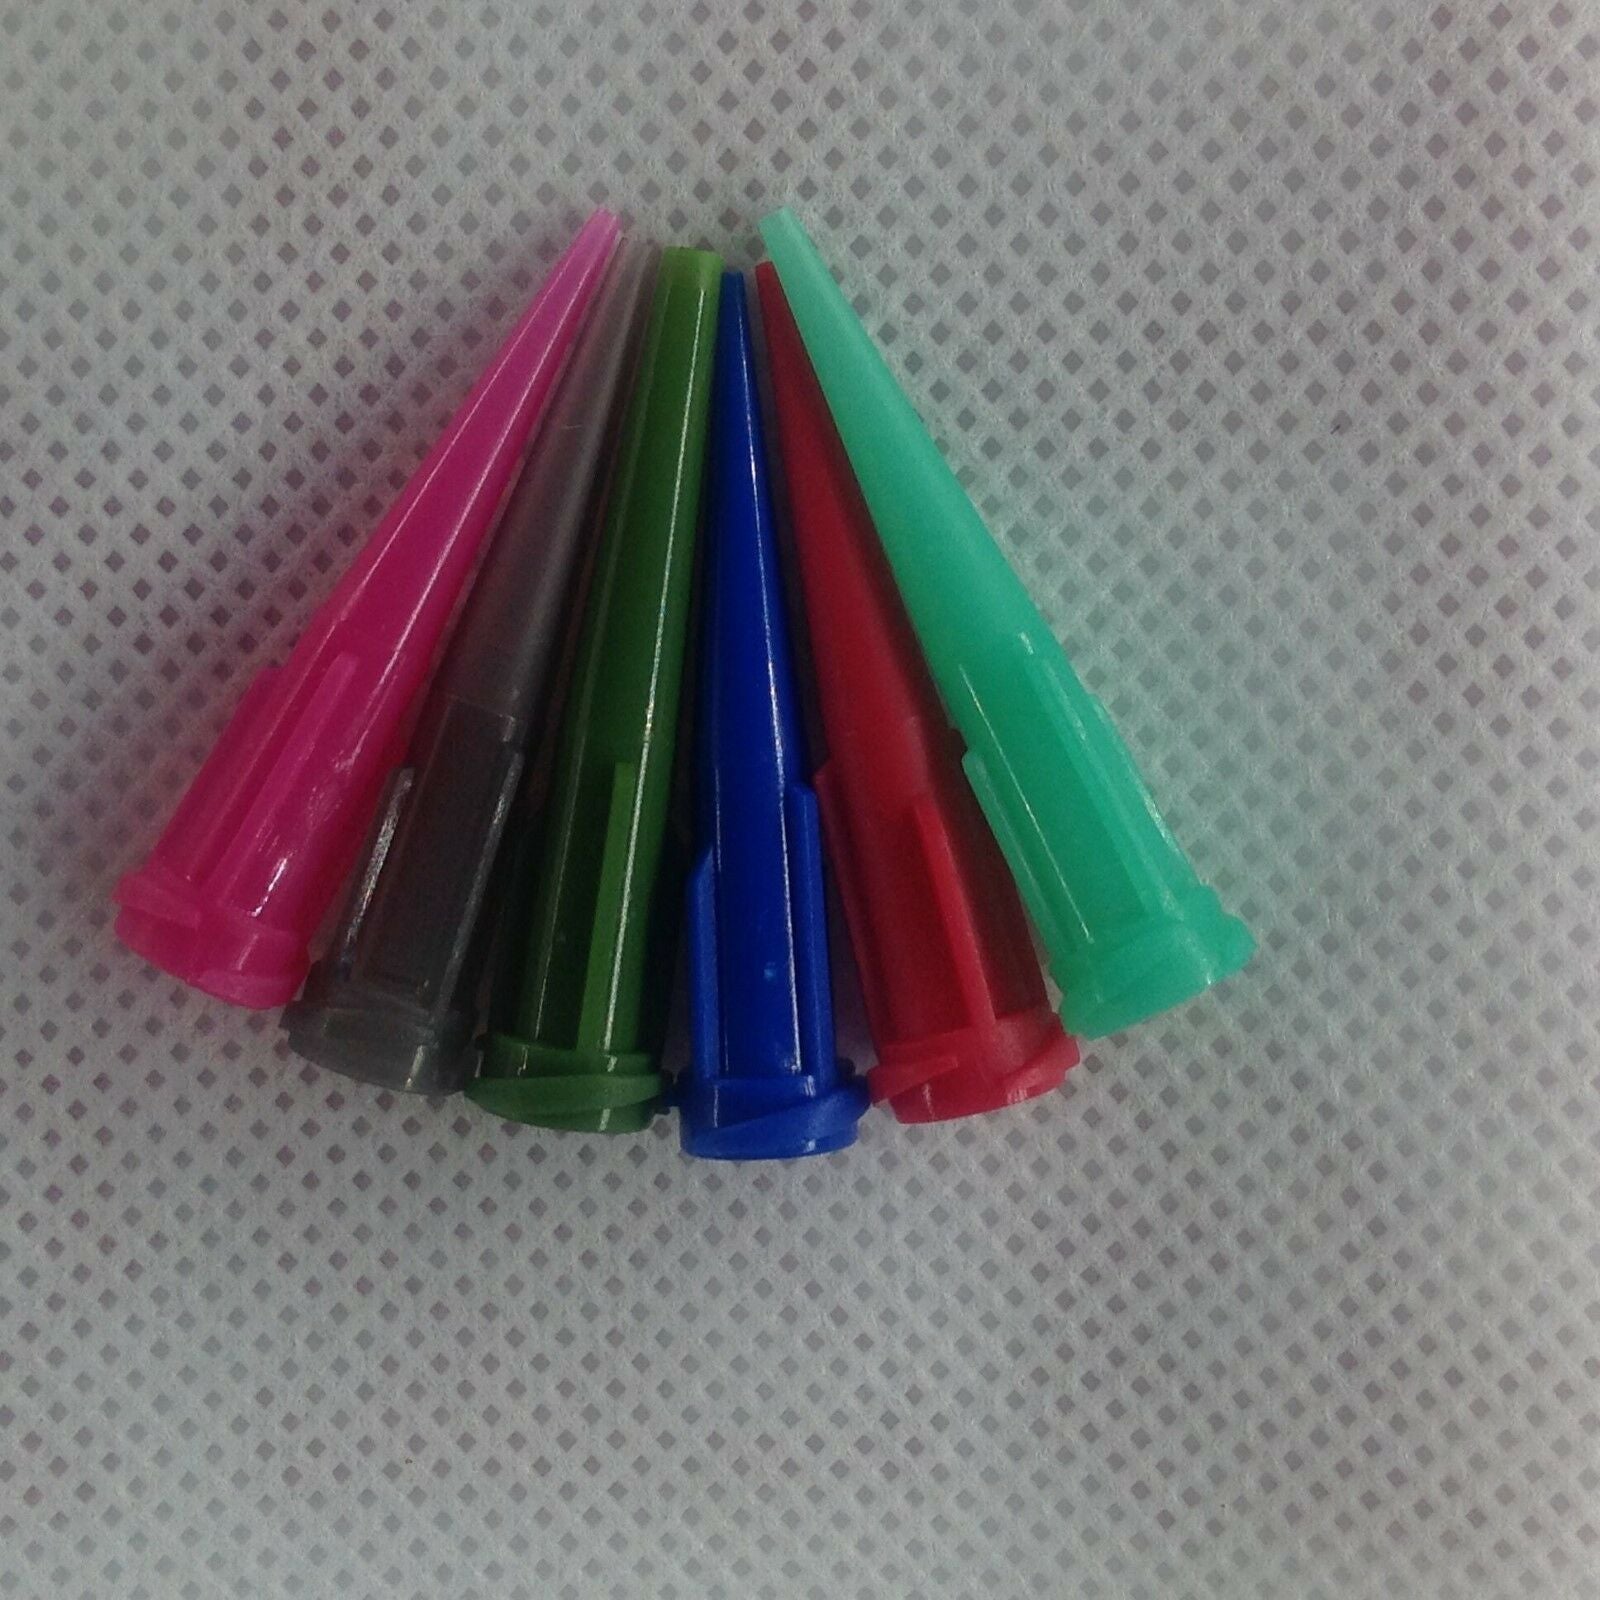 30 x Solder Paste Adhesive Glue Liquid Dispensing Needle Plastic Tapered Tips